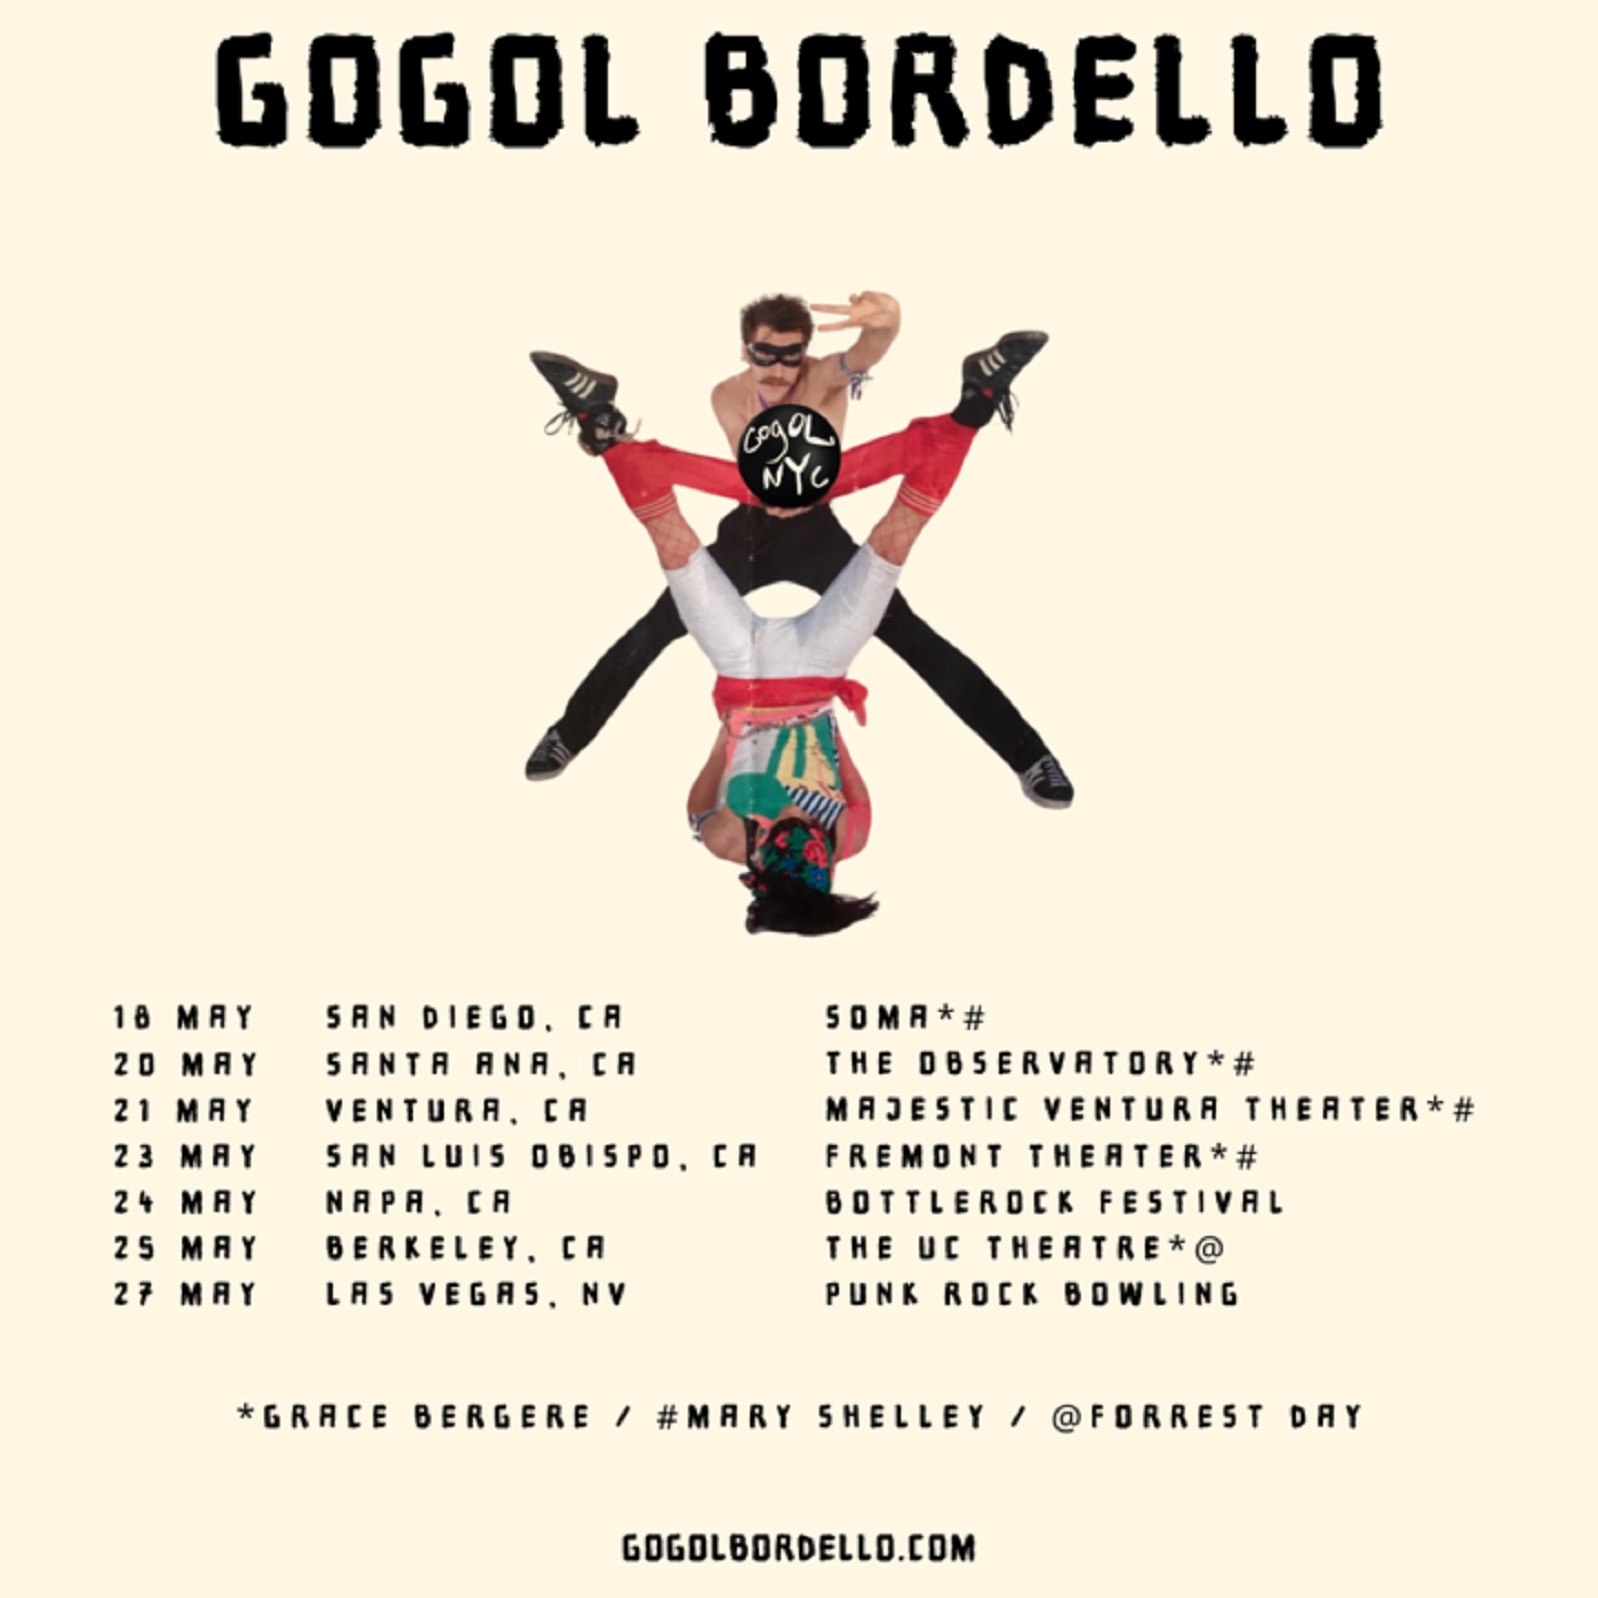 Gogol Bordello Announces West Coast Tour Kicking Off May 18